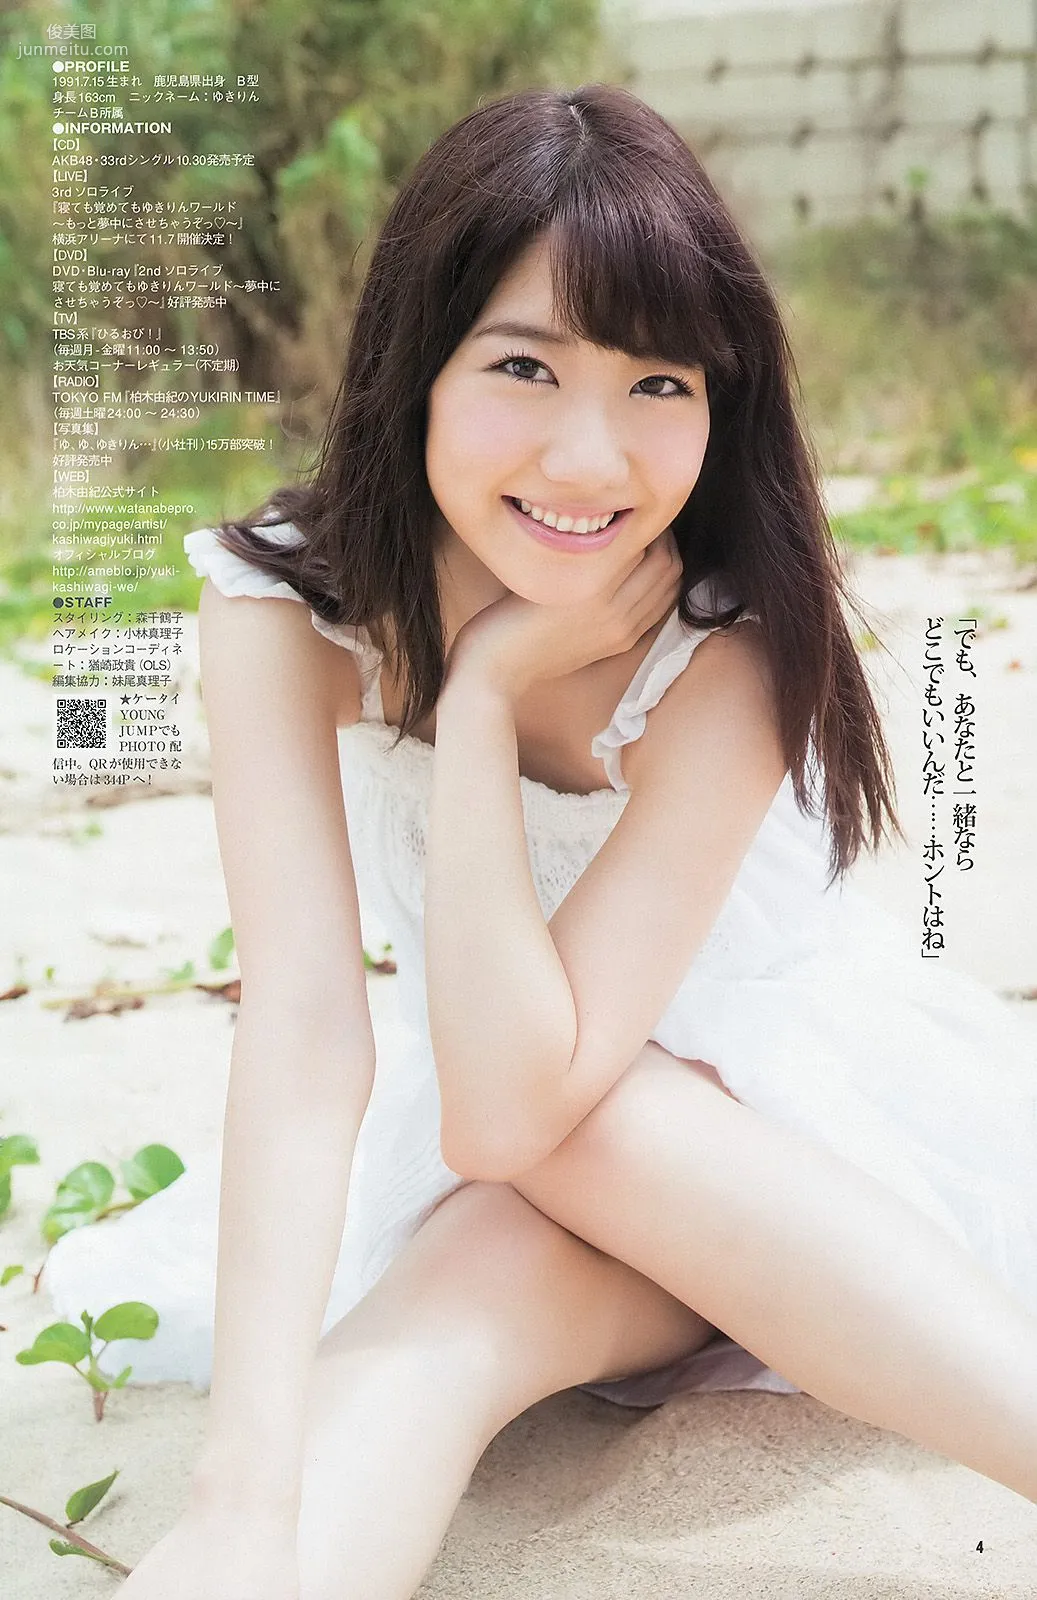 柏木由紀 まほりか(仮) 瑞稀もえ [Weekly Young Jump] 2013年No.43 写真杂志10